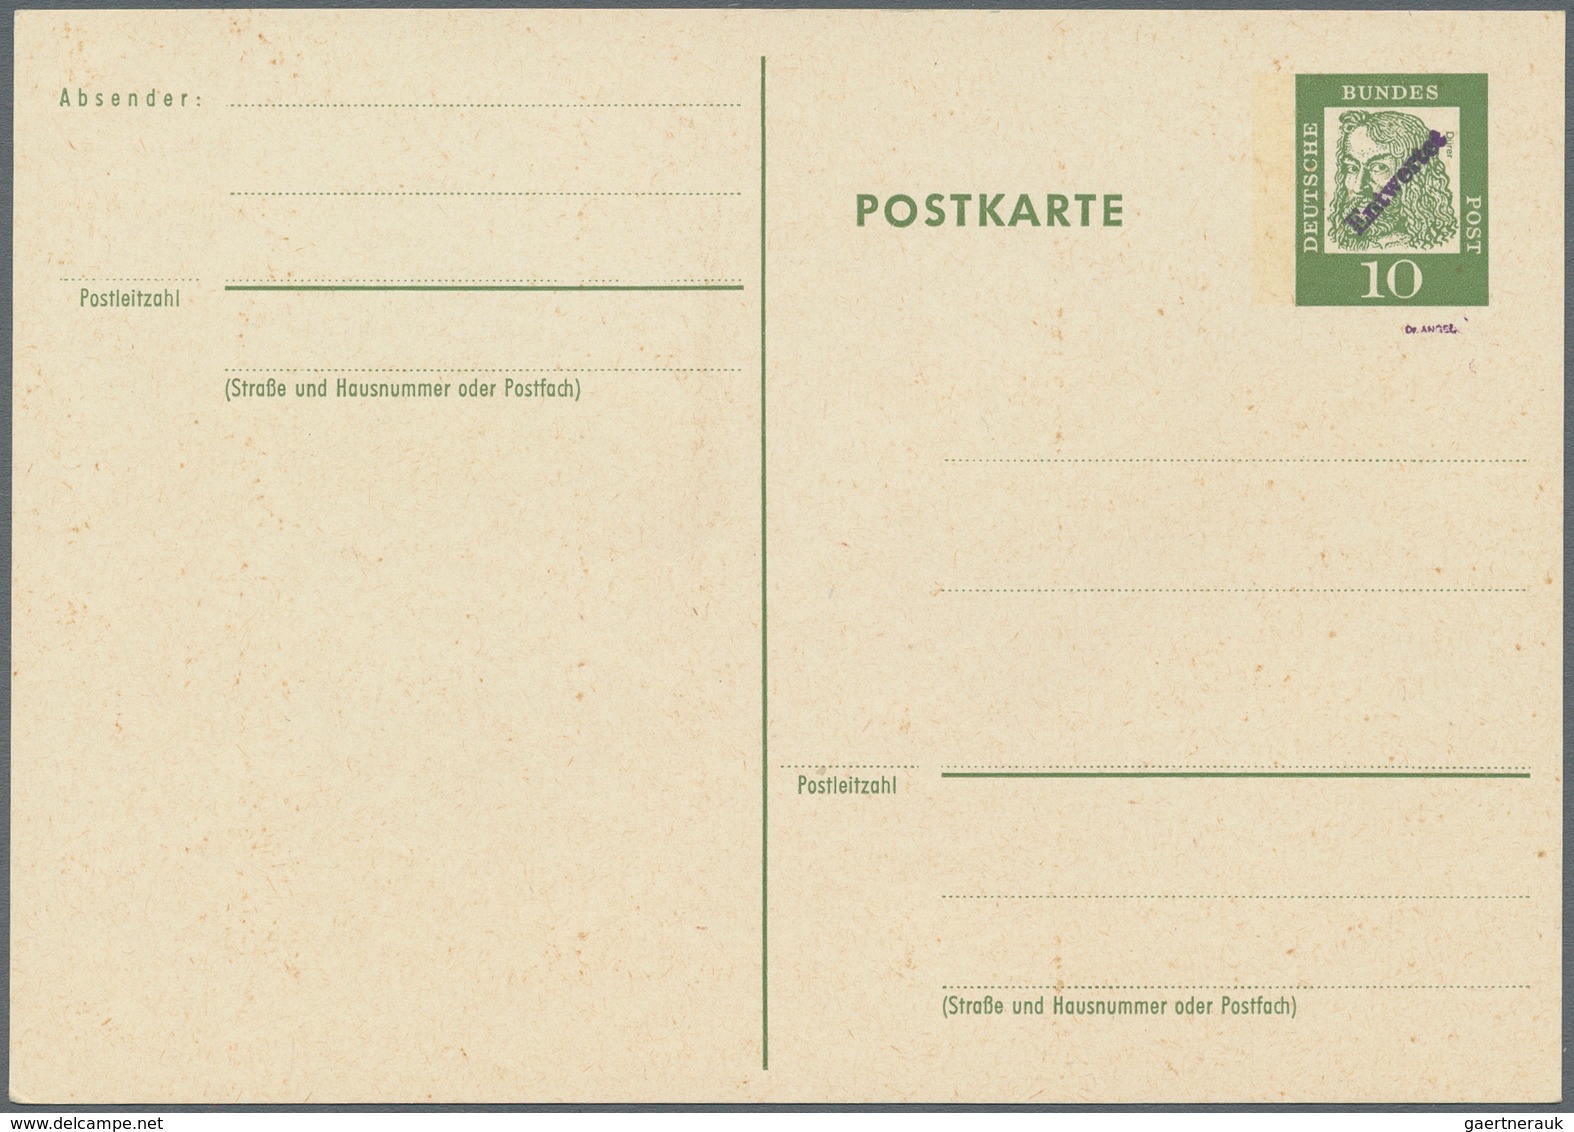 Bundesrepublik Deutschland: 1961. Postkarte 10 Pf Dürer Mit WSt-Aufdruck "Entwertet". Ungebraucht. G - Covers & Documents